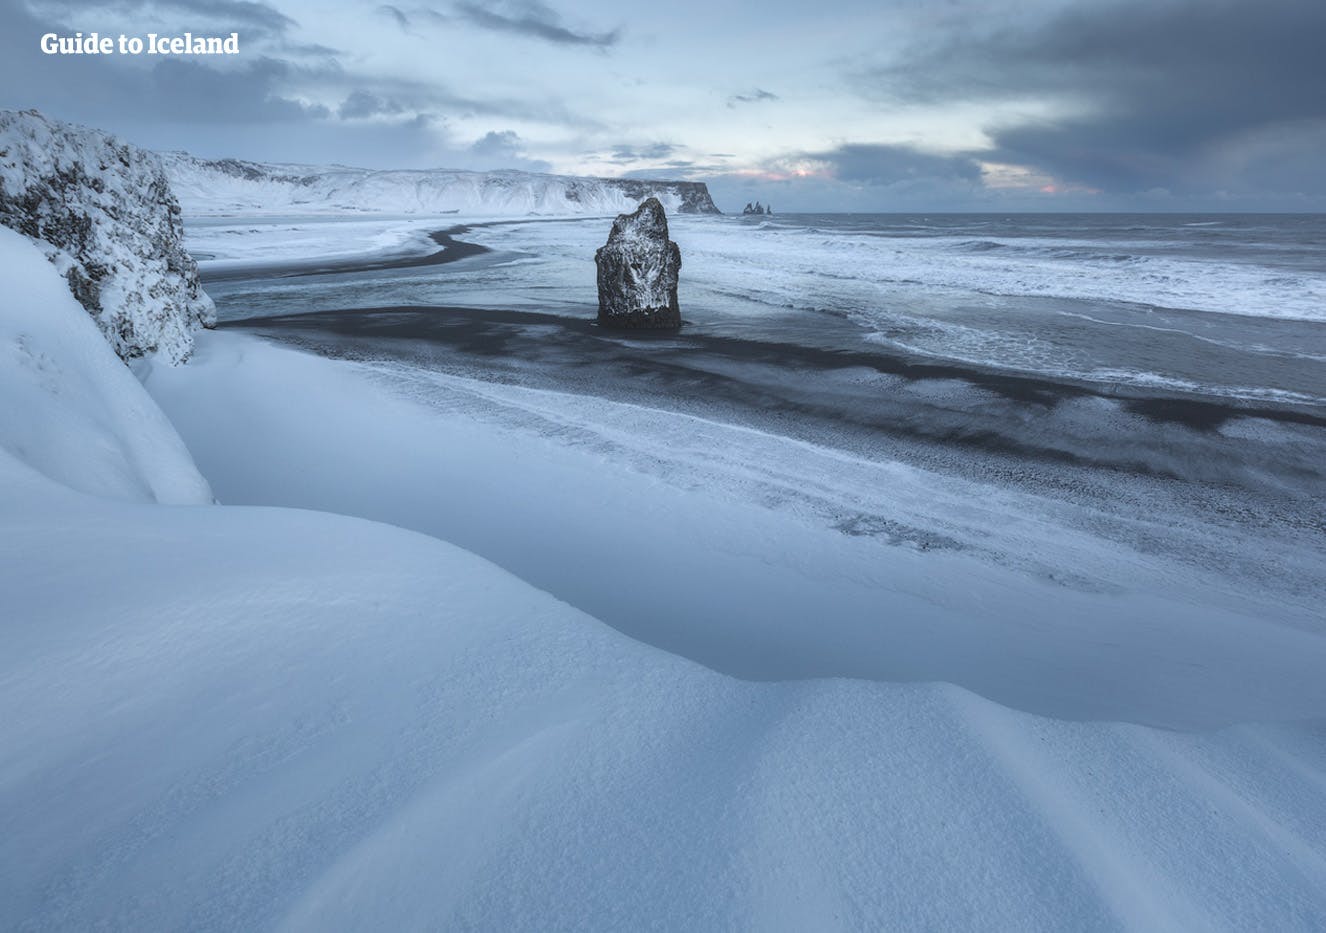 La Playa de Arena Negra Reynisfjara al sur de Islandia cubierta por un fino manto de nieve.